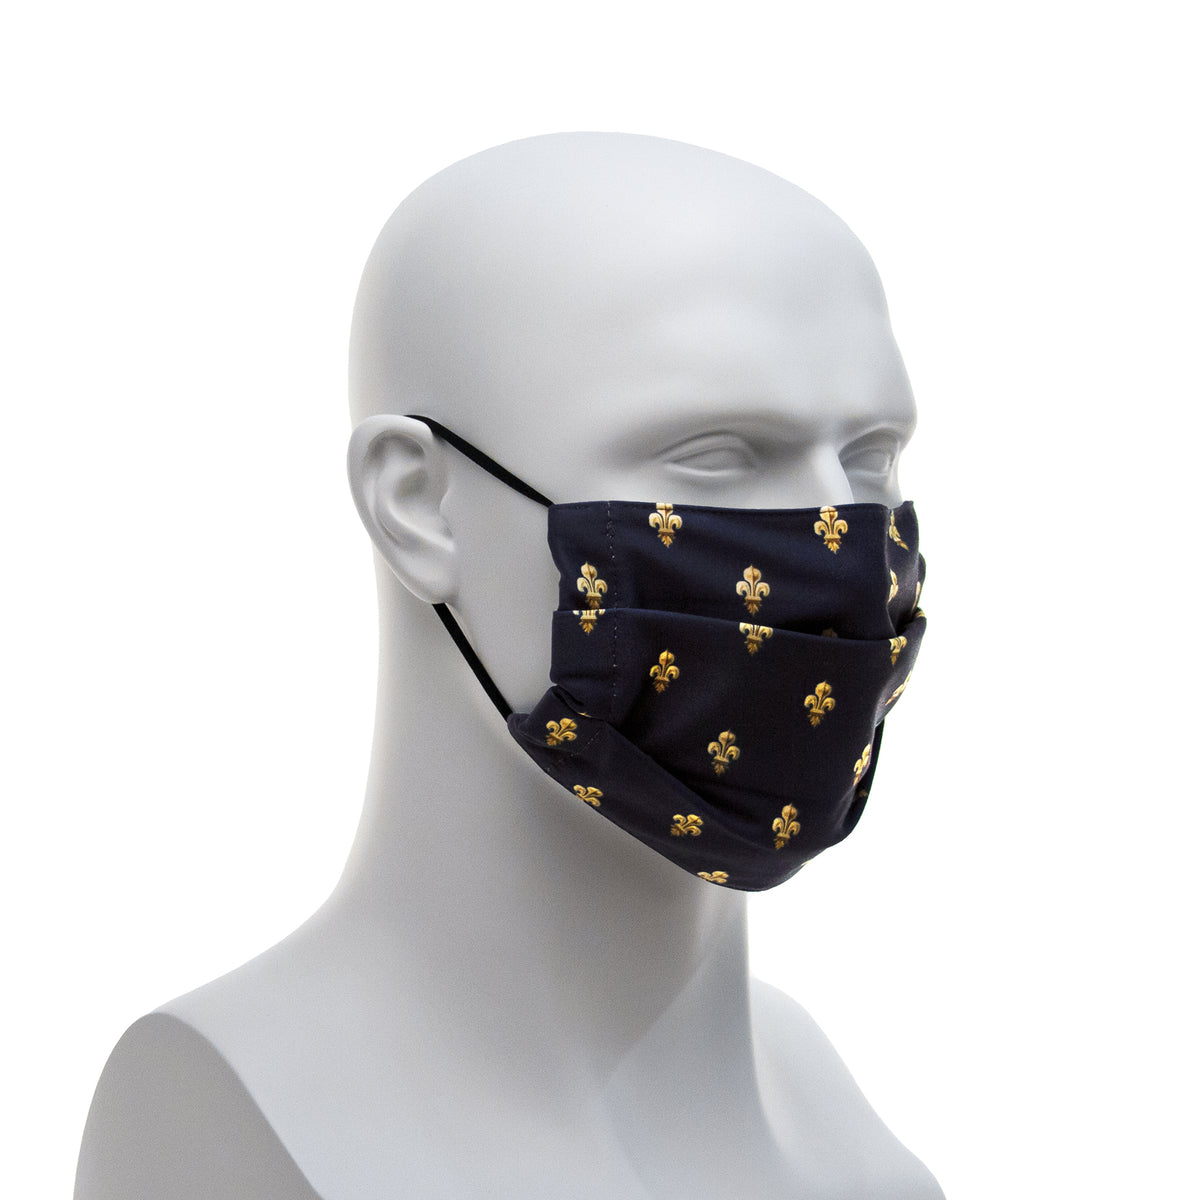 Cloth Face Covering - Navy Blue Fleur-de-lis Pattern